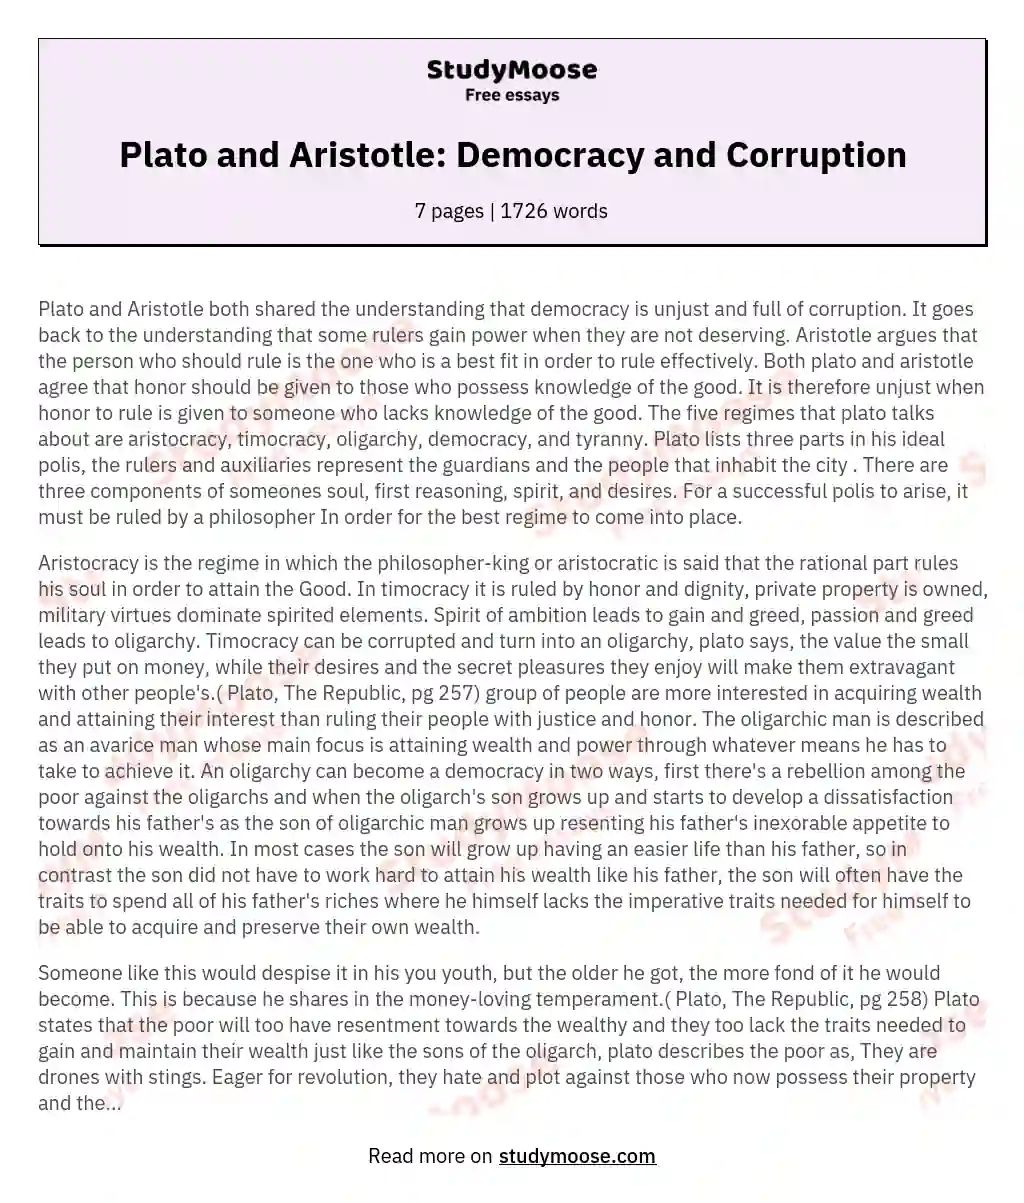 Plato and Aristotle: Democracy and Corruption